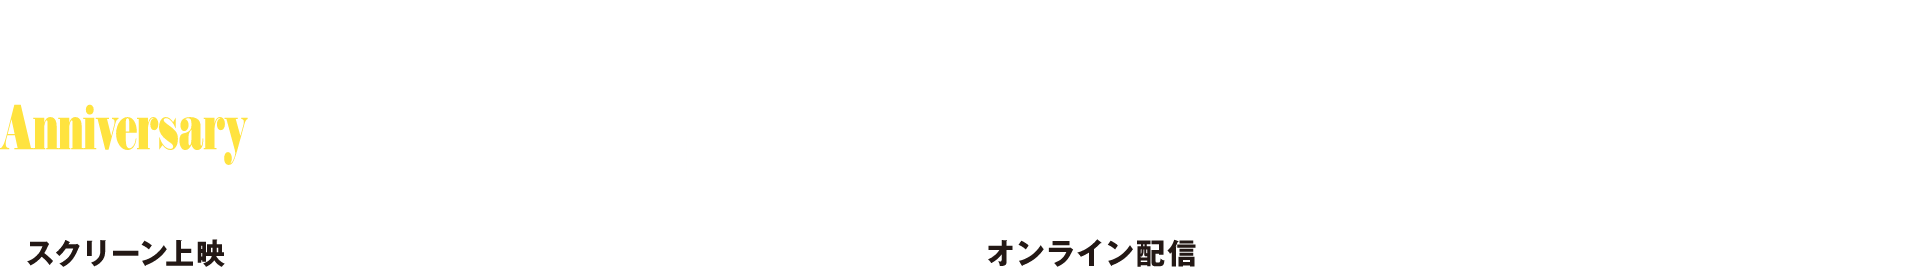 SKIPシティー国際Dシネマ映画祭2023